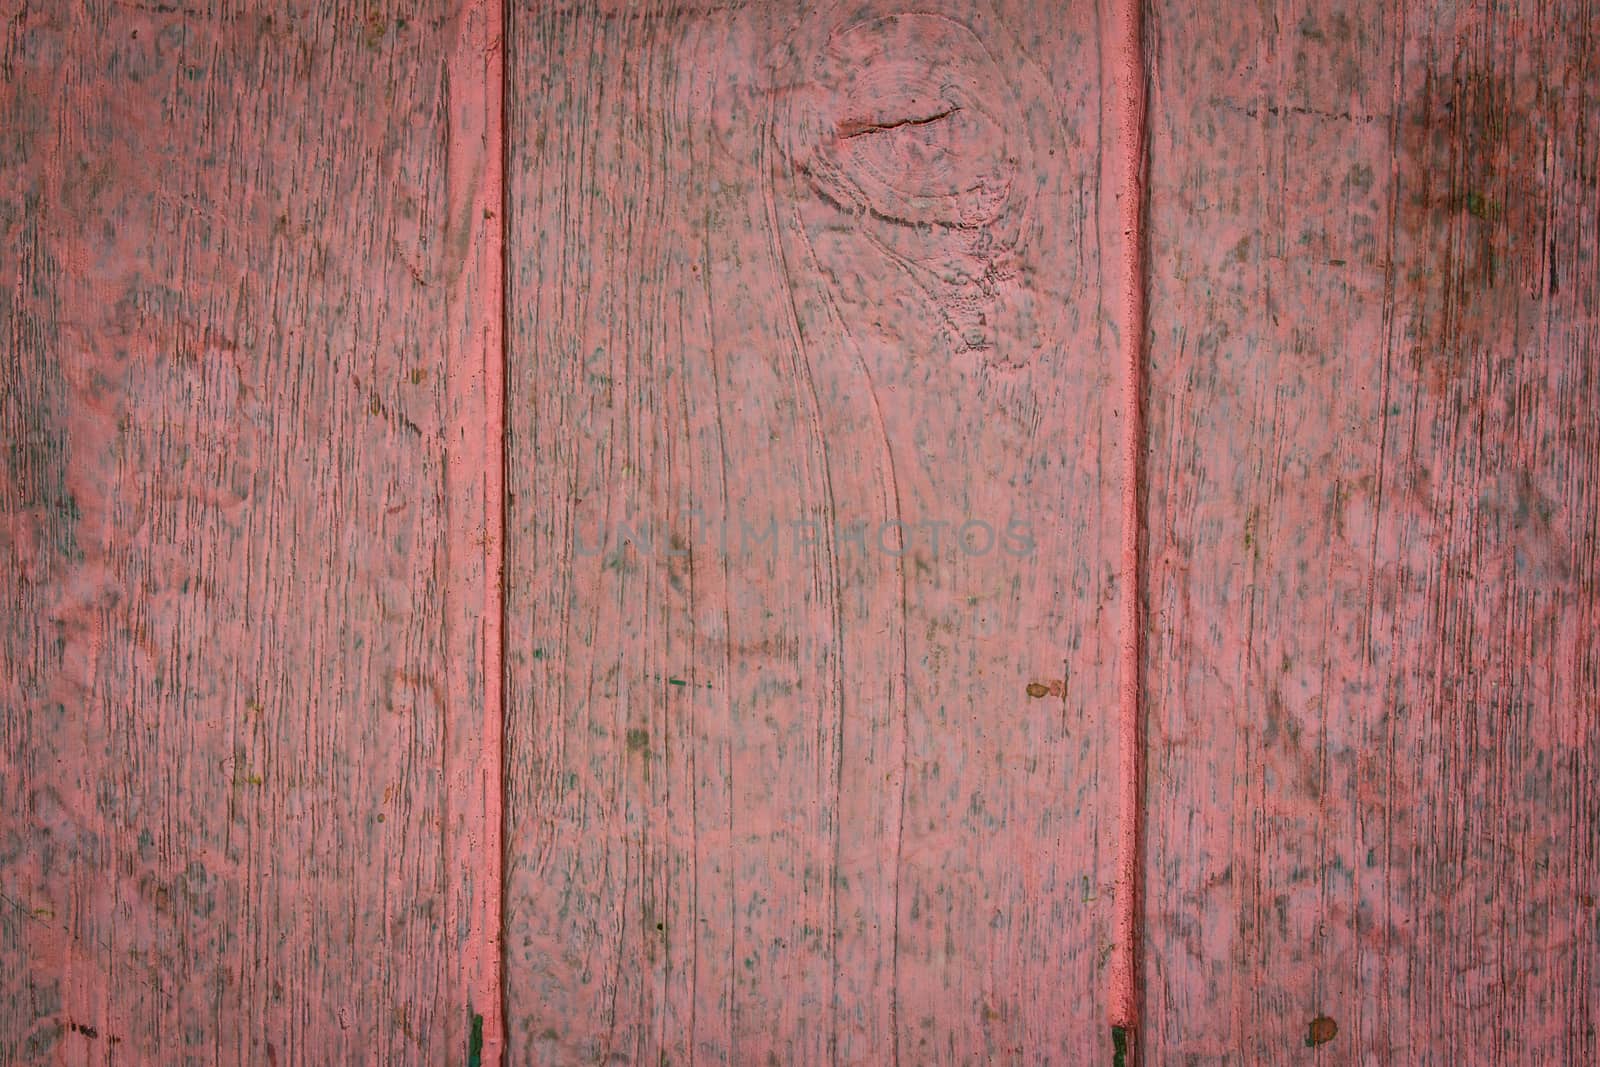 The pink texture of the door wood